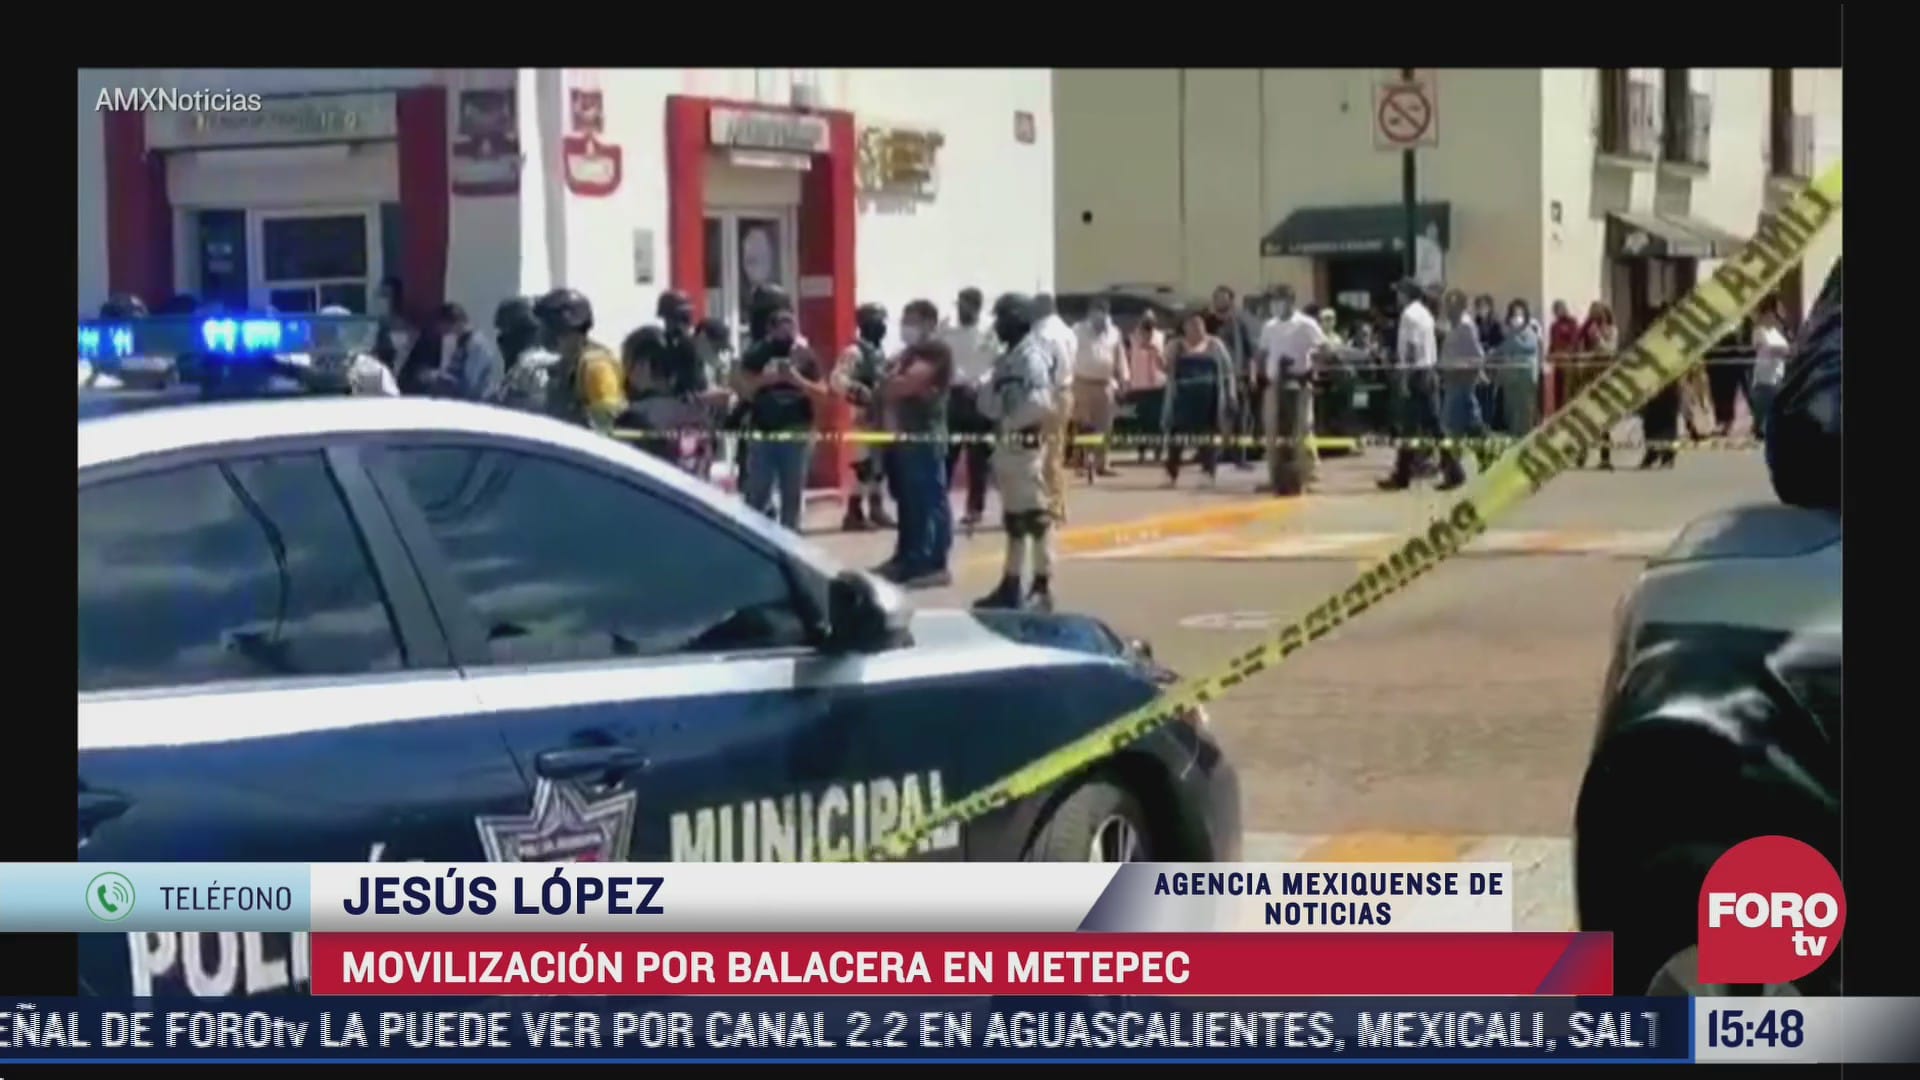 se registra movilizacion policiaca por balacera en metepec estado de mexico